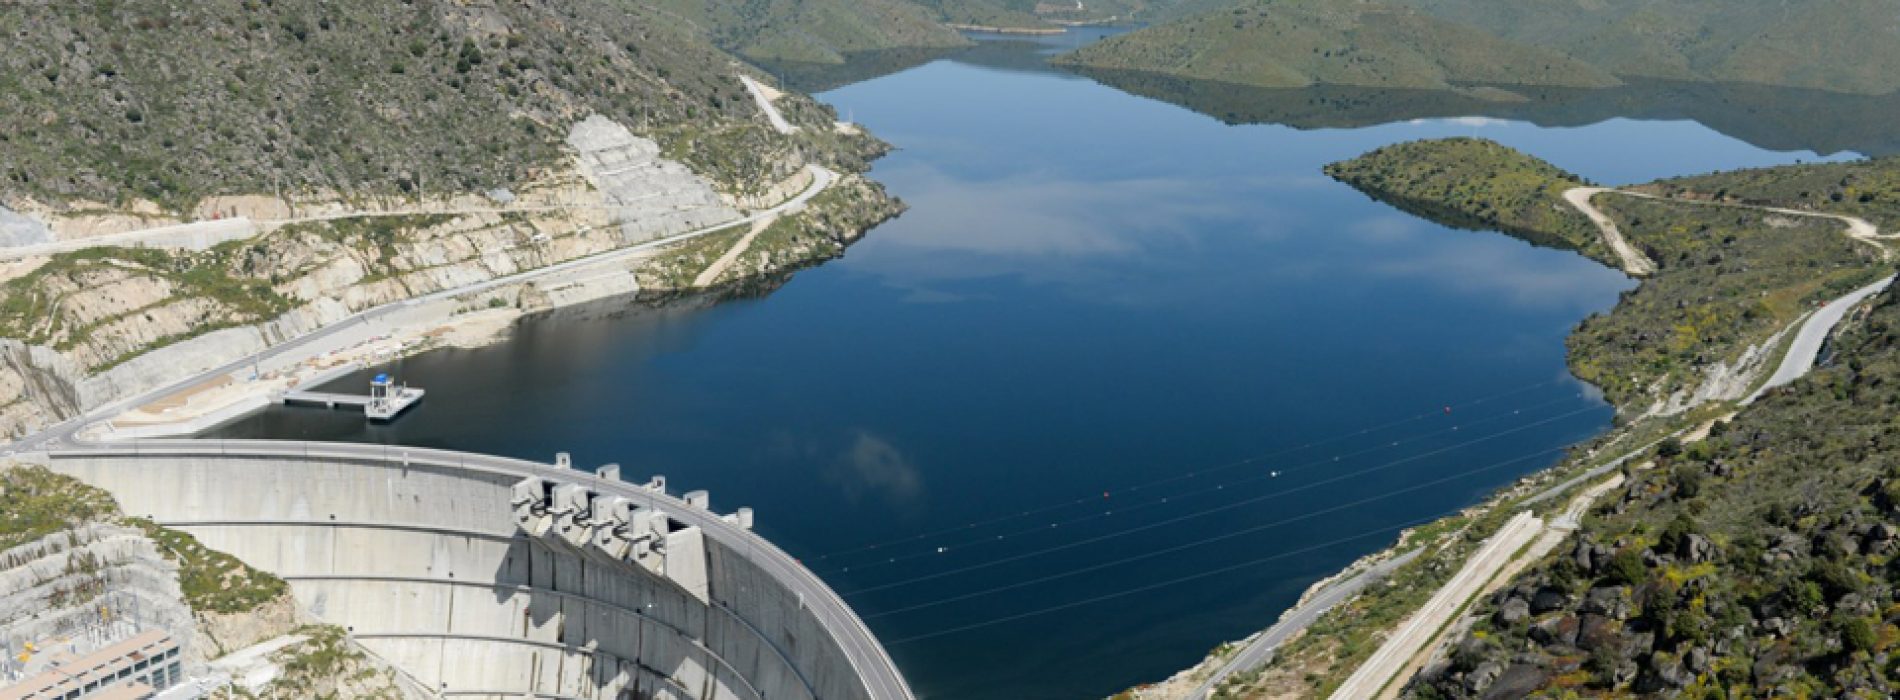 BEI financia a construção de três novas barragens